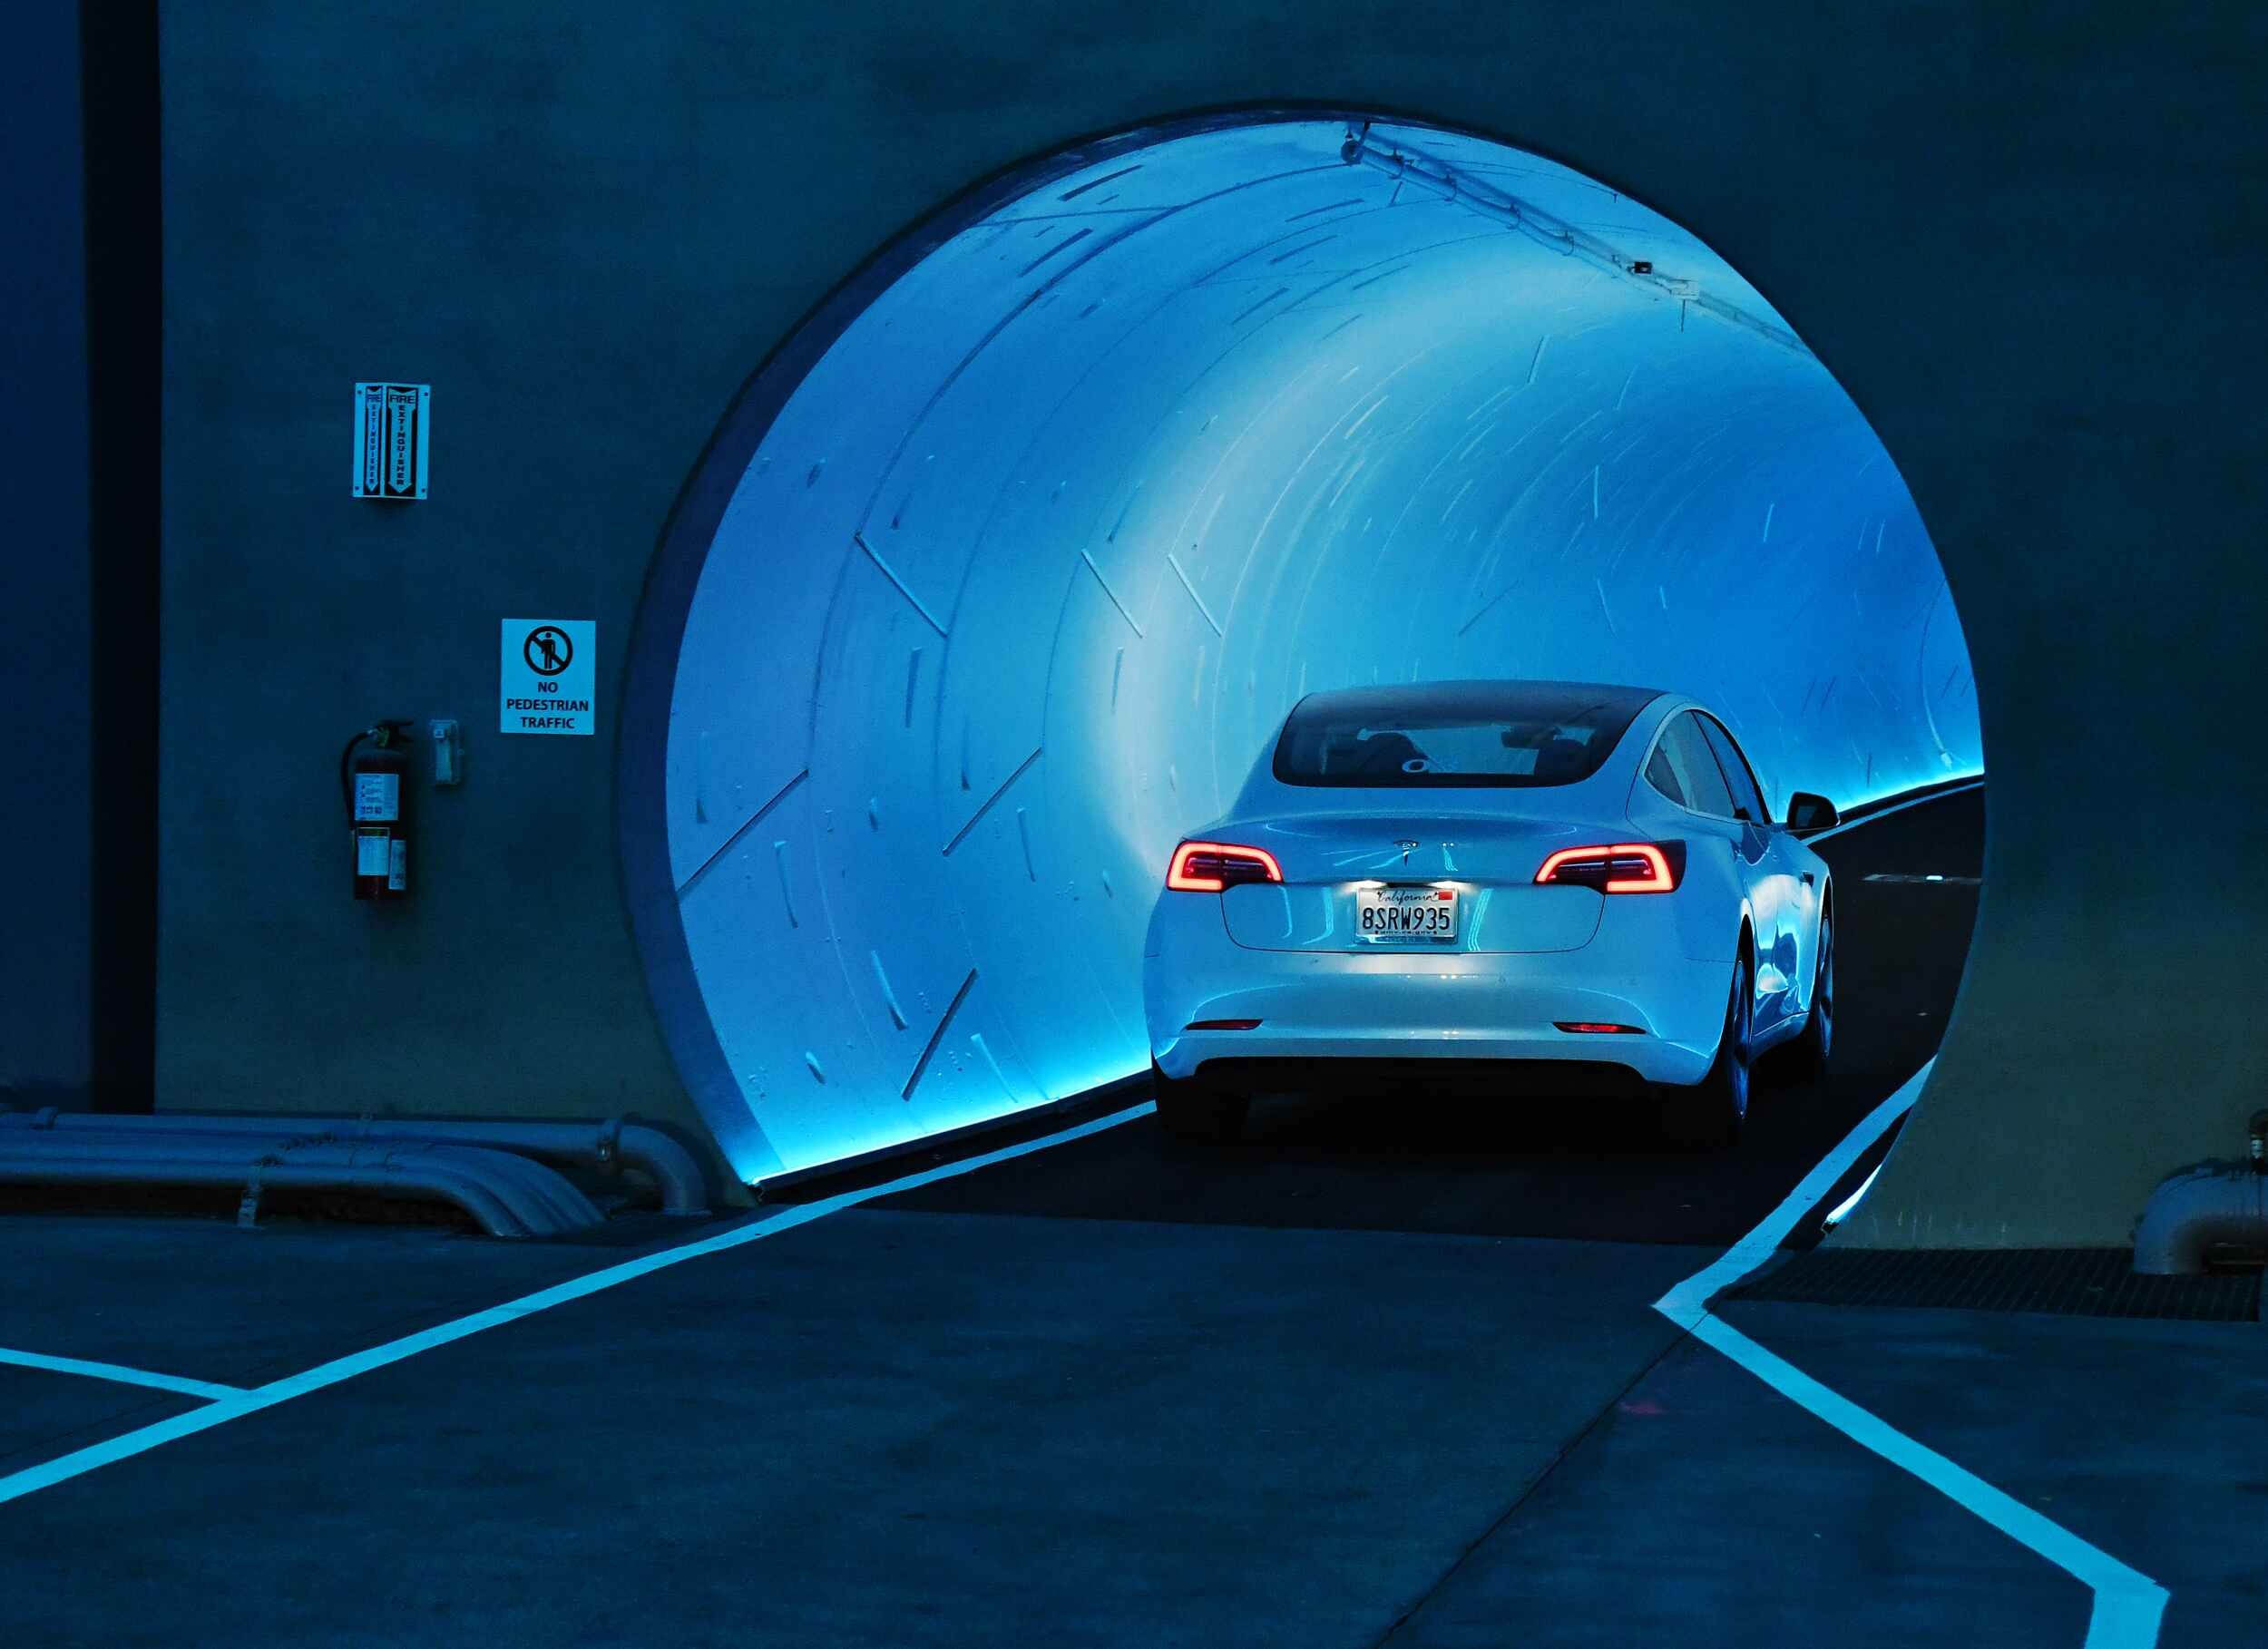 Ý tưởng đào hầm giao thông của Elon Musk gọi vốn thành công 6 tỷ USD - ảnh 3